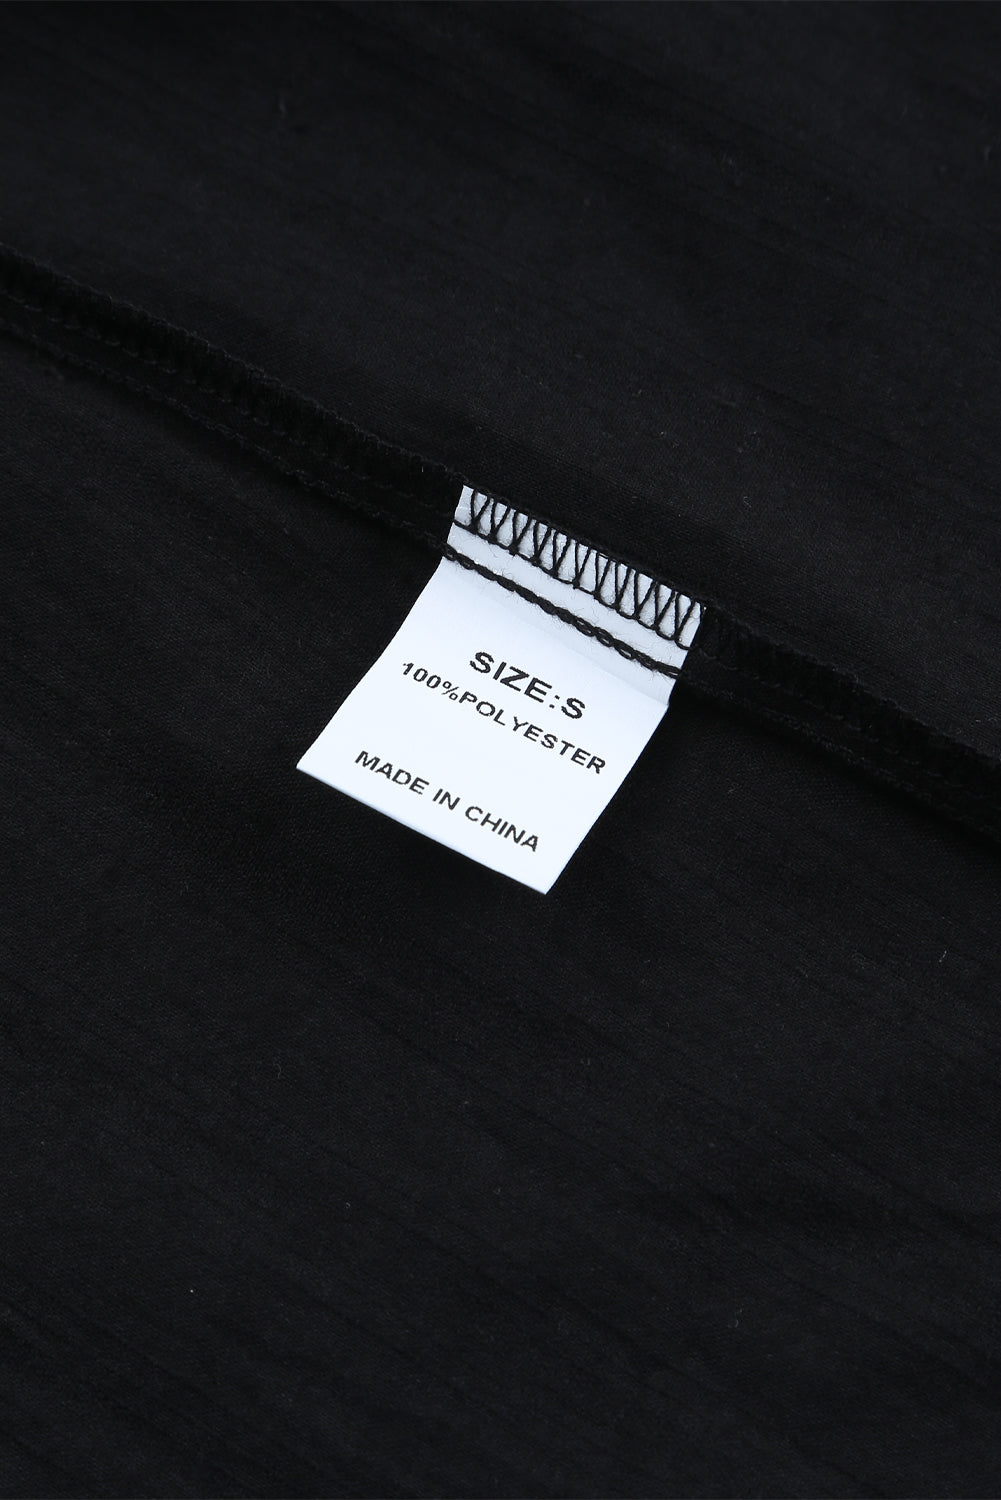 Crna teksturirana košulja dugih rukava s džepovima